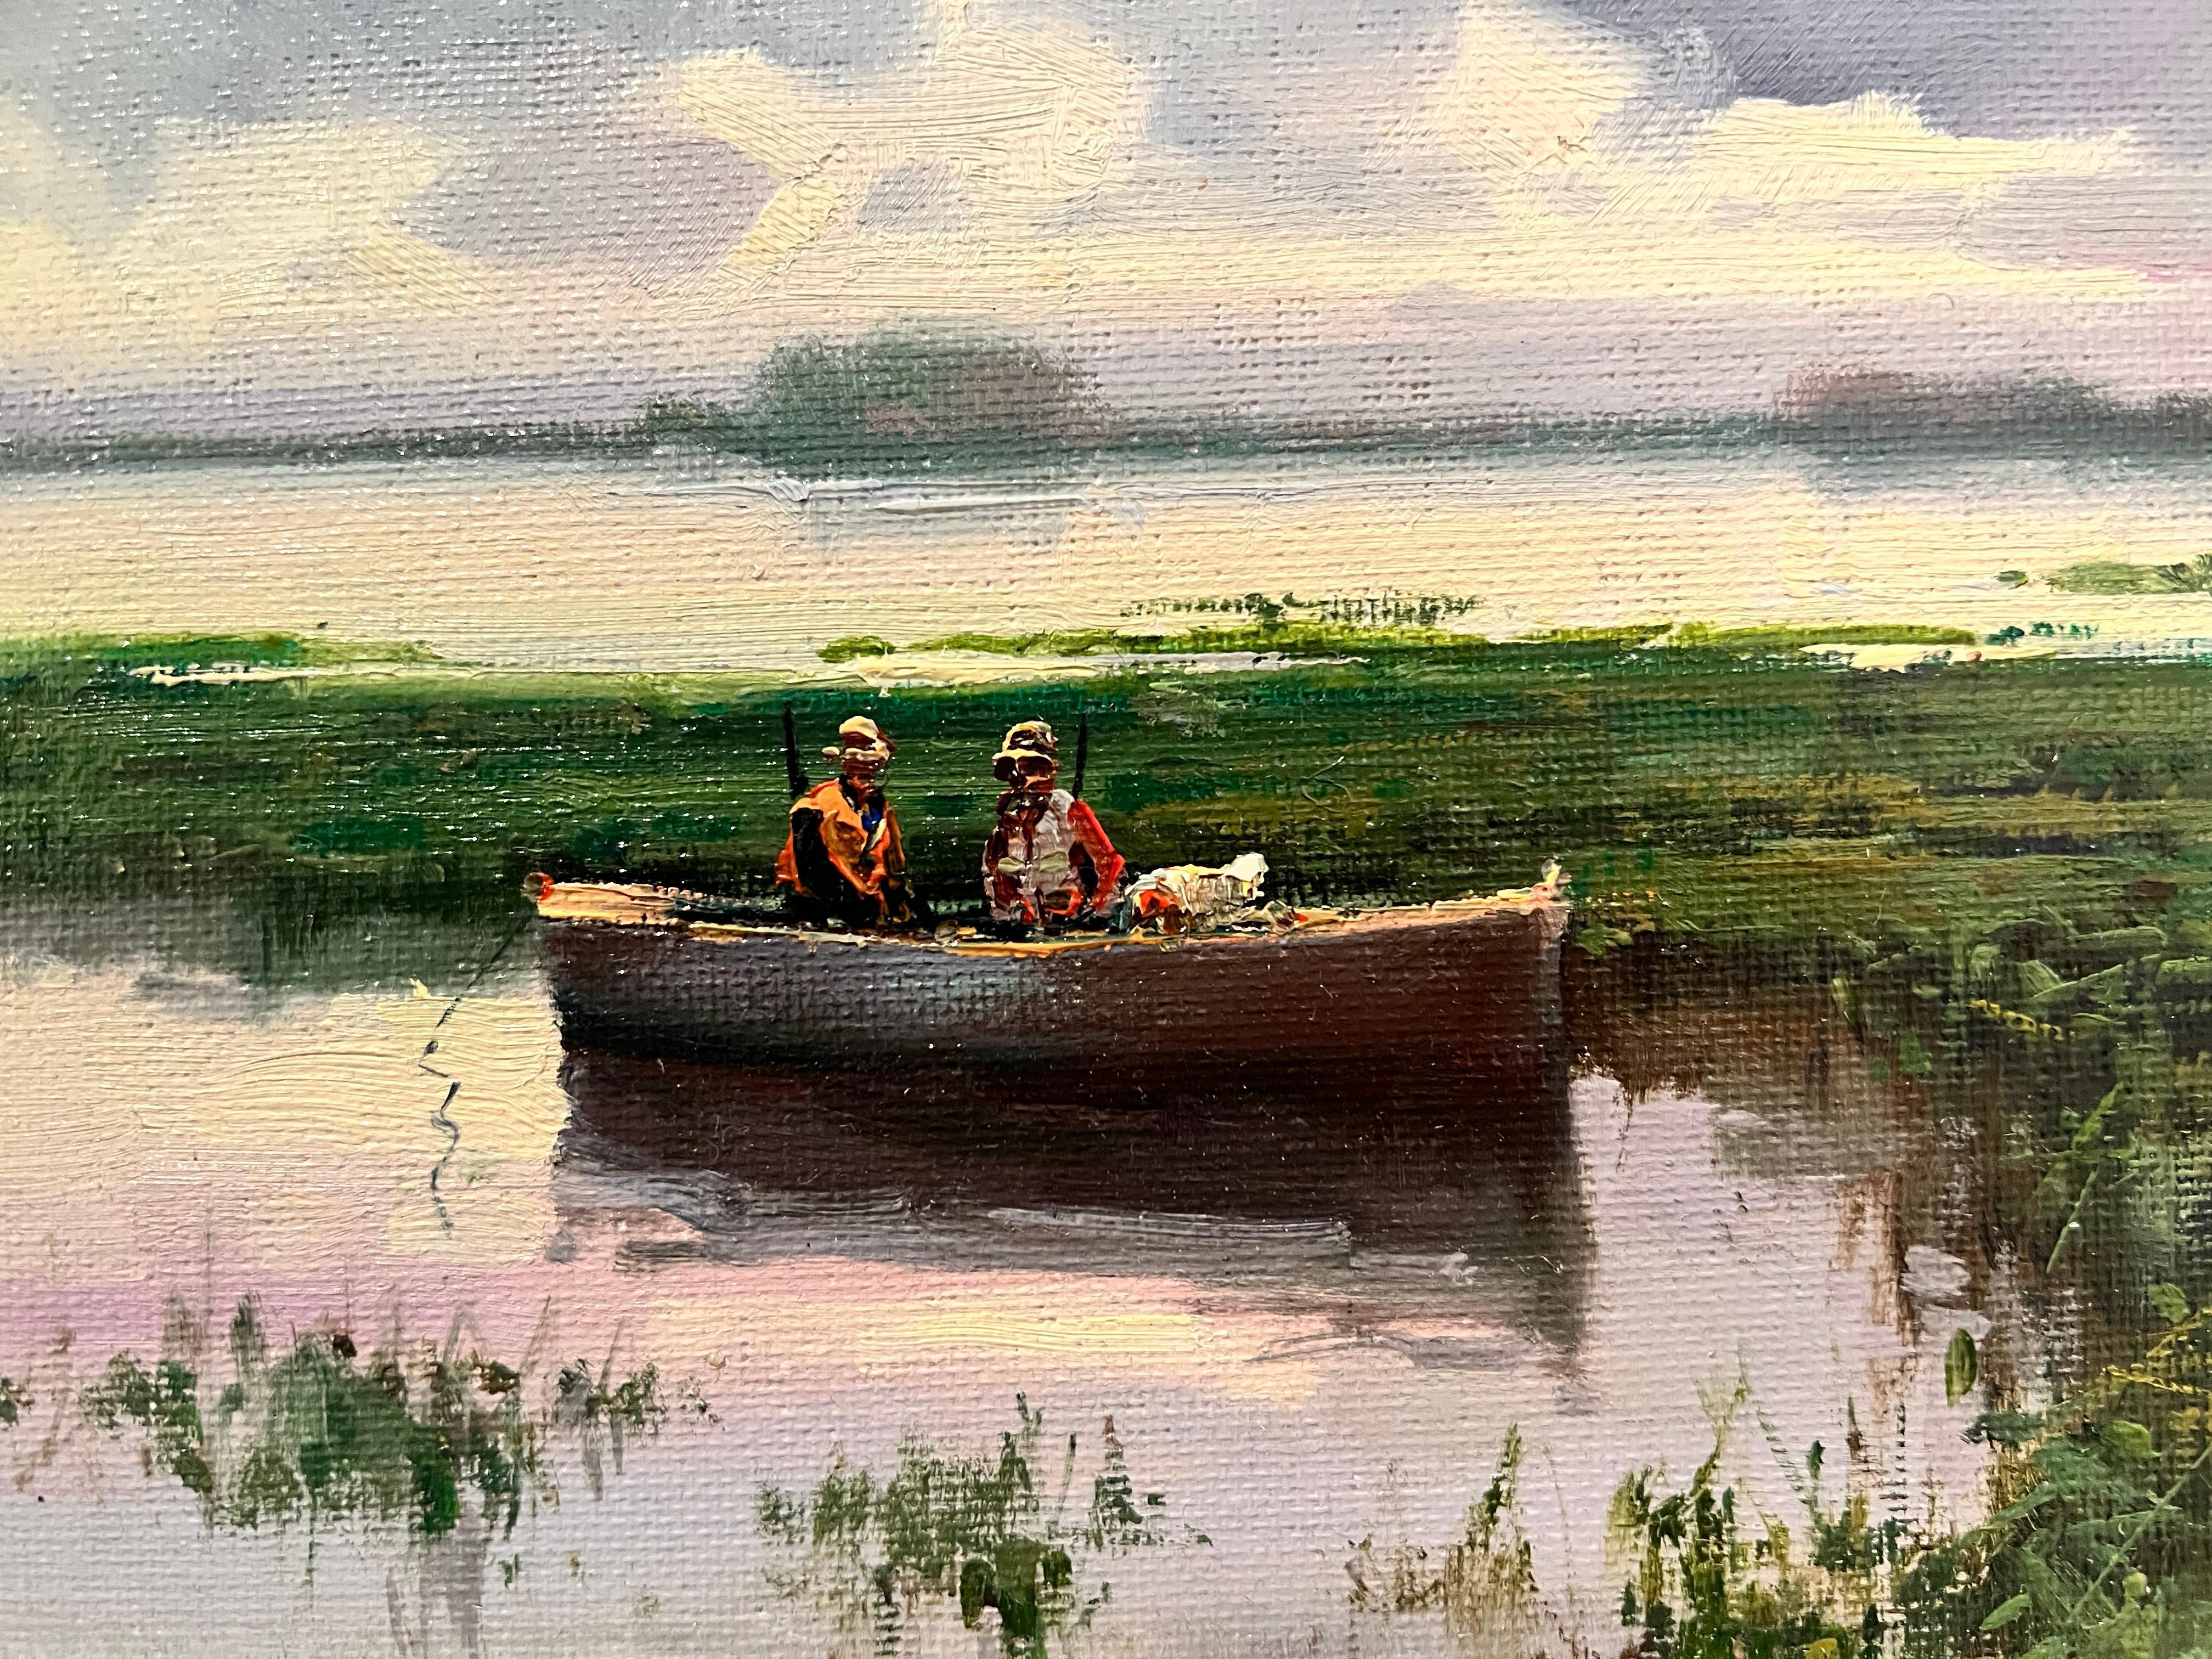 Cazadores Meditano En La Albufera Lago (Hunters Meditating on Albufera Lake) - Impressionist Painting by Salvador Caballero 